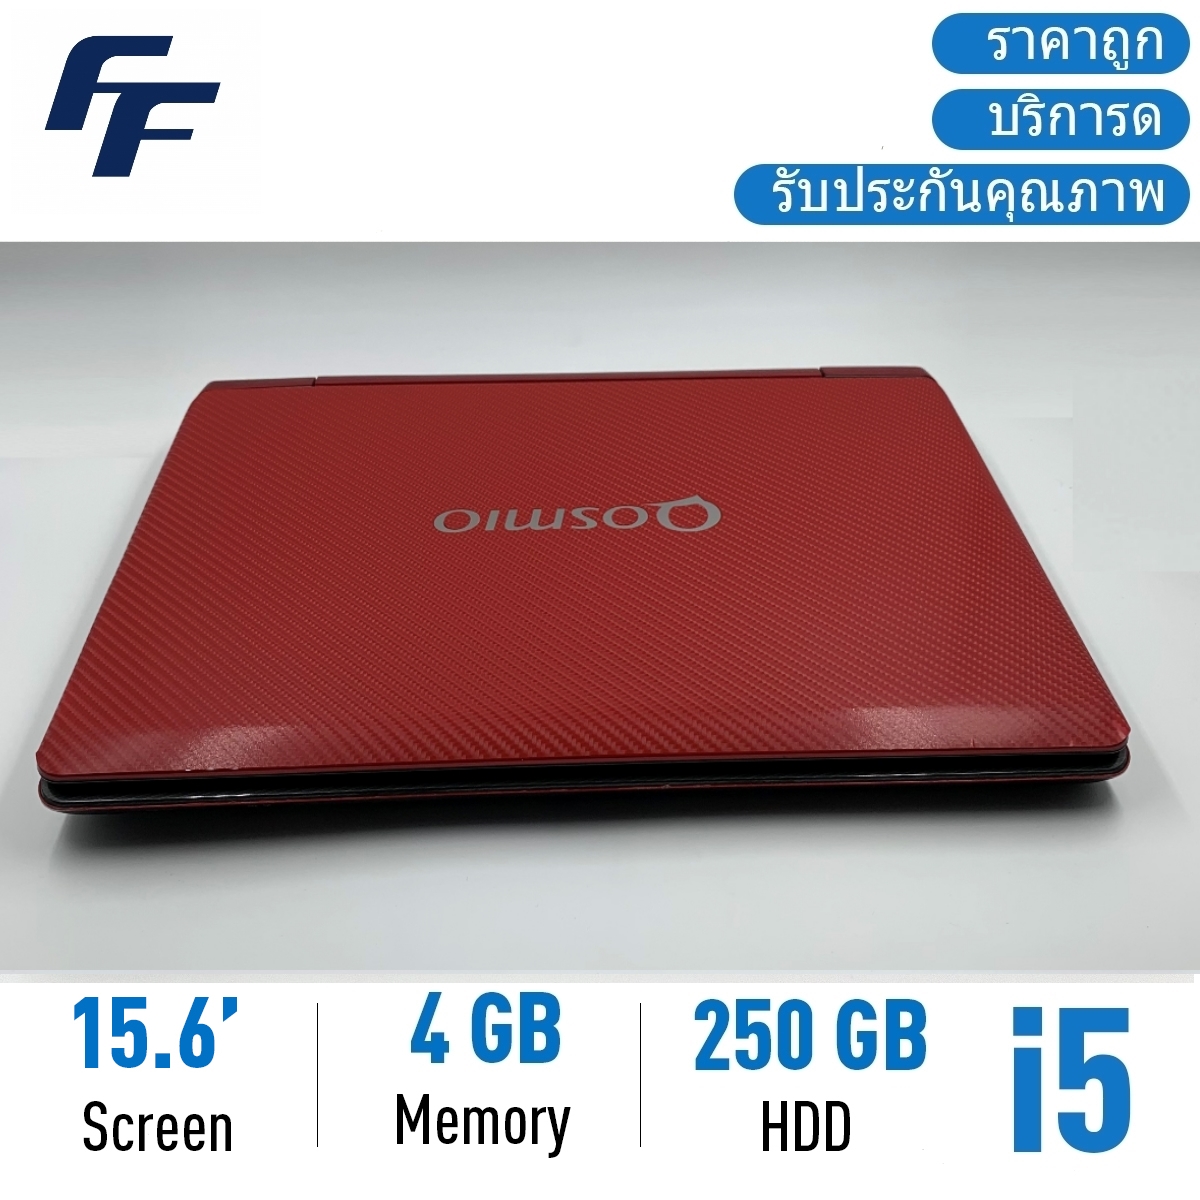 โน๊ตบุ๊คมือสอง Notebook ราคาถูกๆ Toshiba F60 i5 15.6 นิ้ว Camera โน๊ตบุ๊ค laptop มือสอง โน็ตบุ๊คมือ2 โน้ตบุ๊คถูกๆ โน๊ตบุ๊คมือสอง2